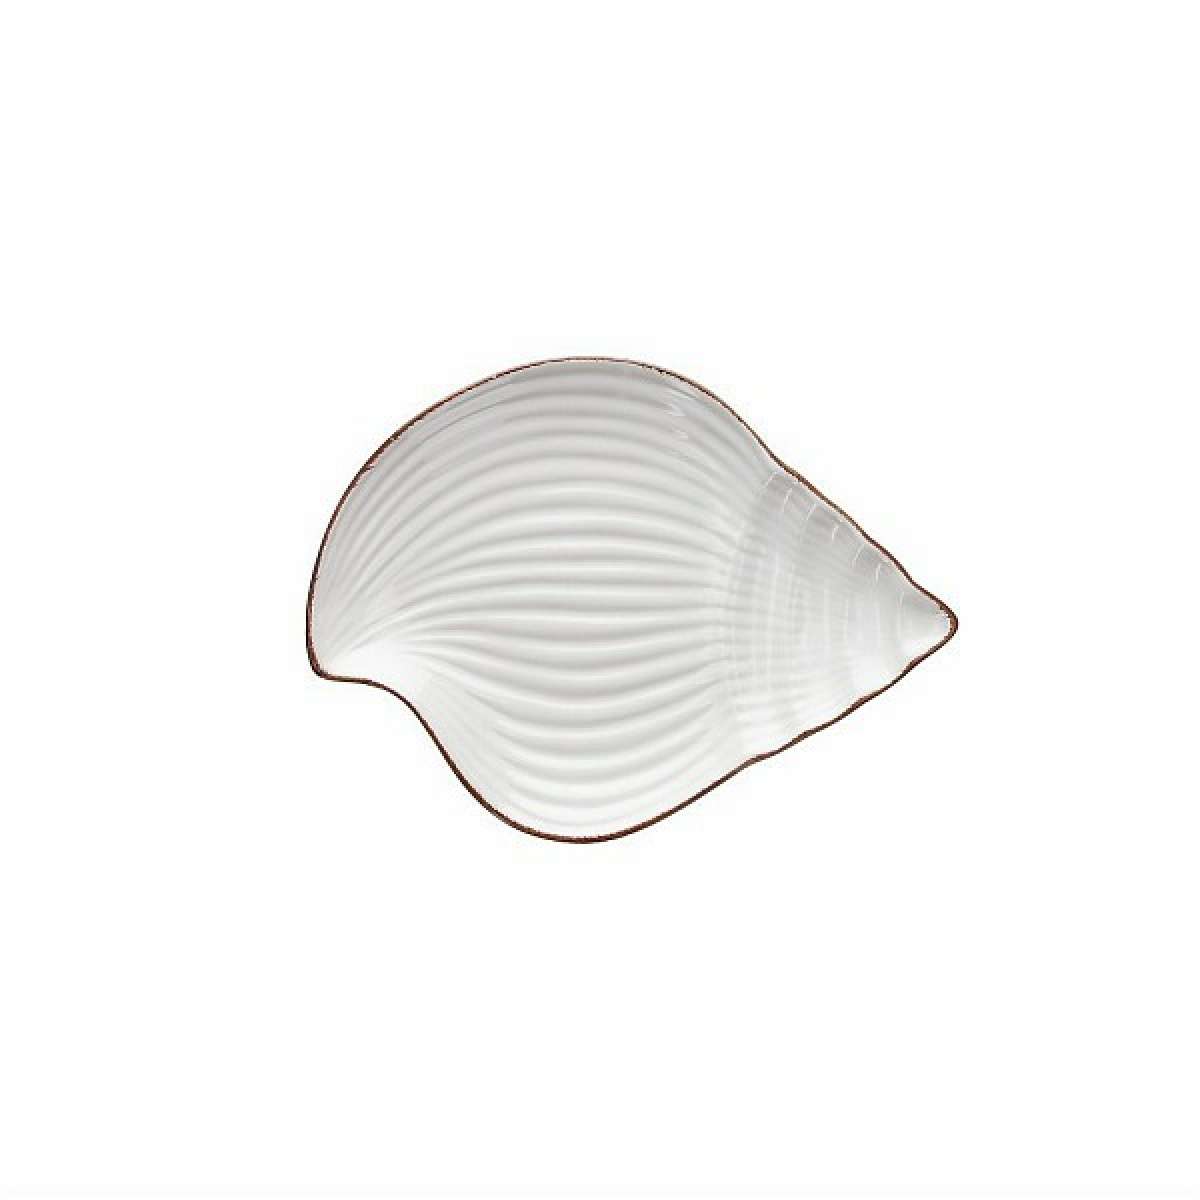 Immagine del prodotto Piattino Conchiglia Dory in Porcellana bianca | Tognana